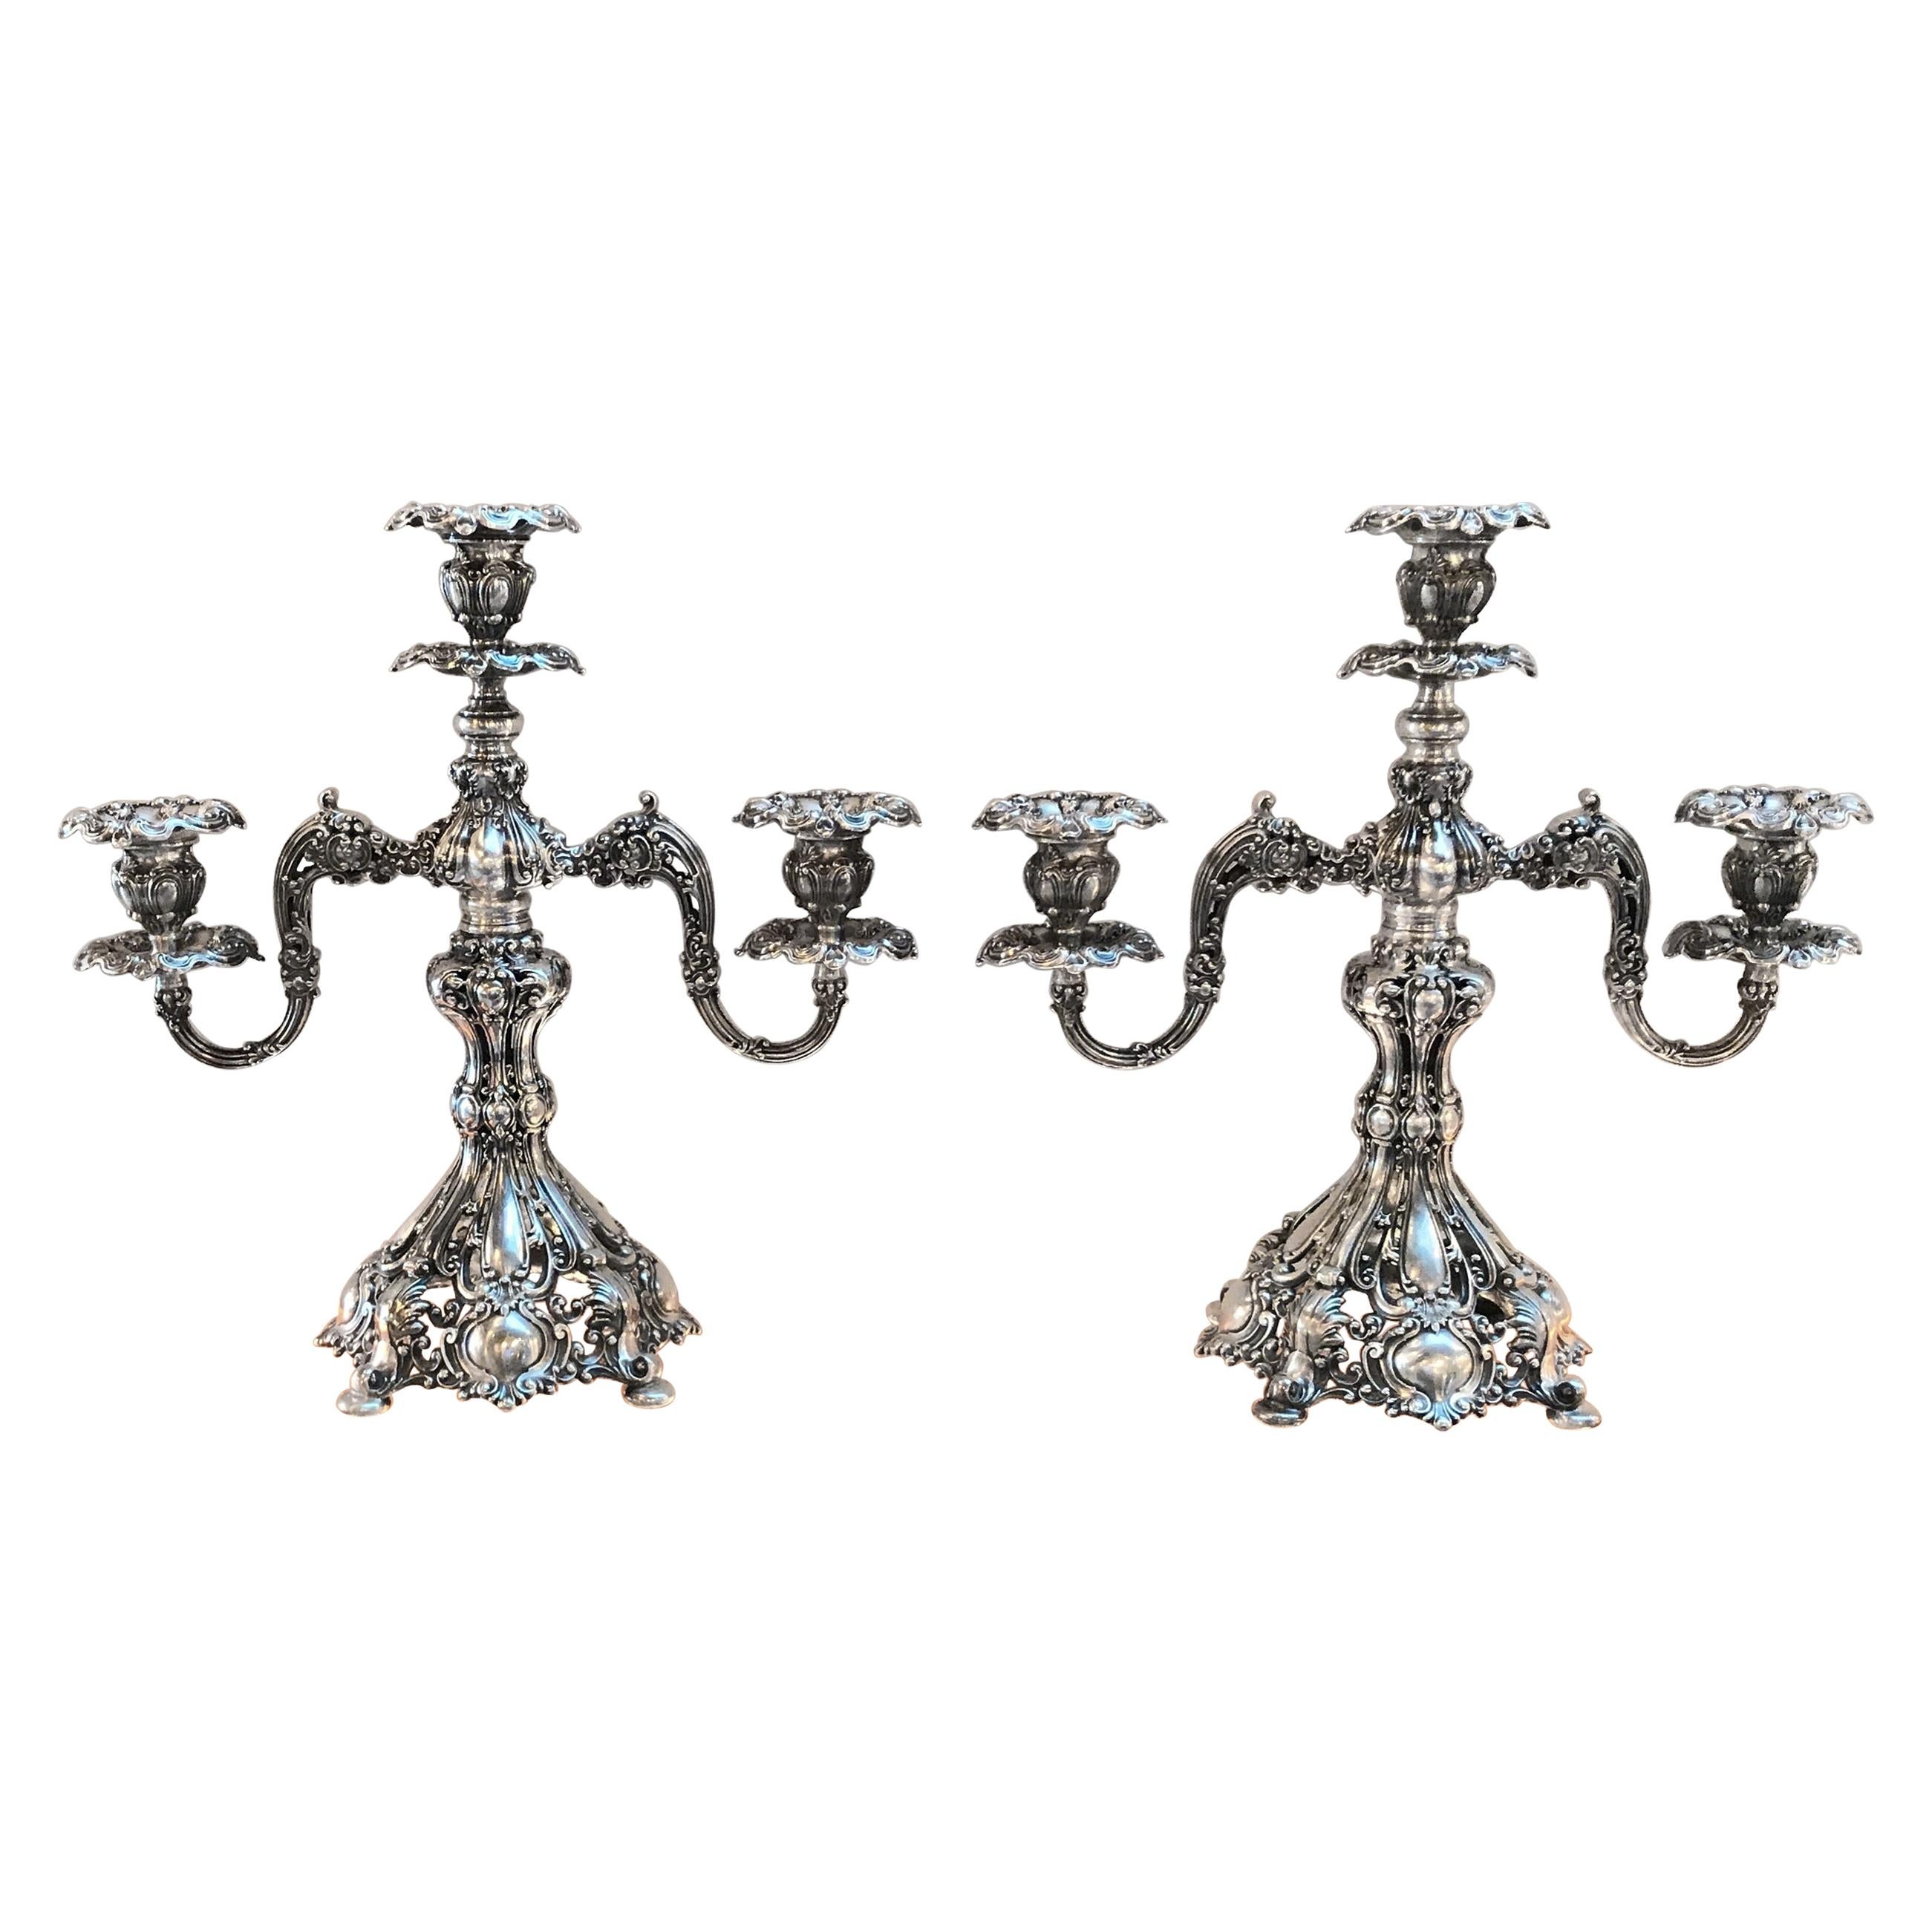 Paire de candélabres baroques en métal argenté « Renaissance »